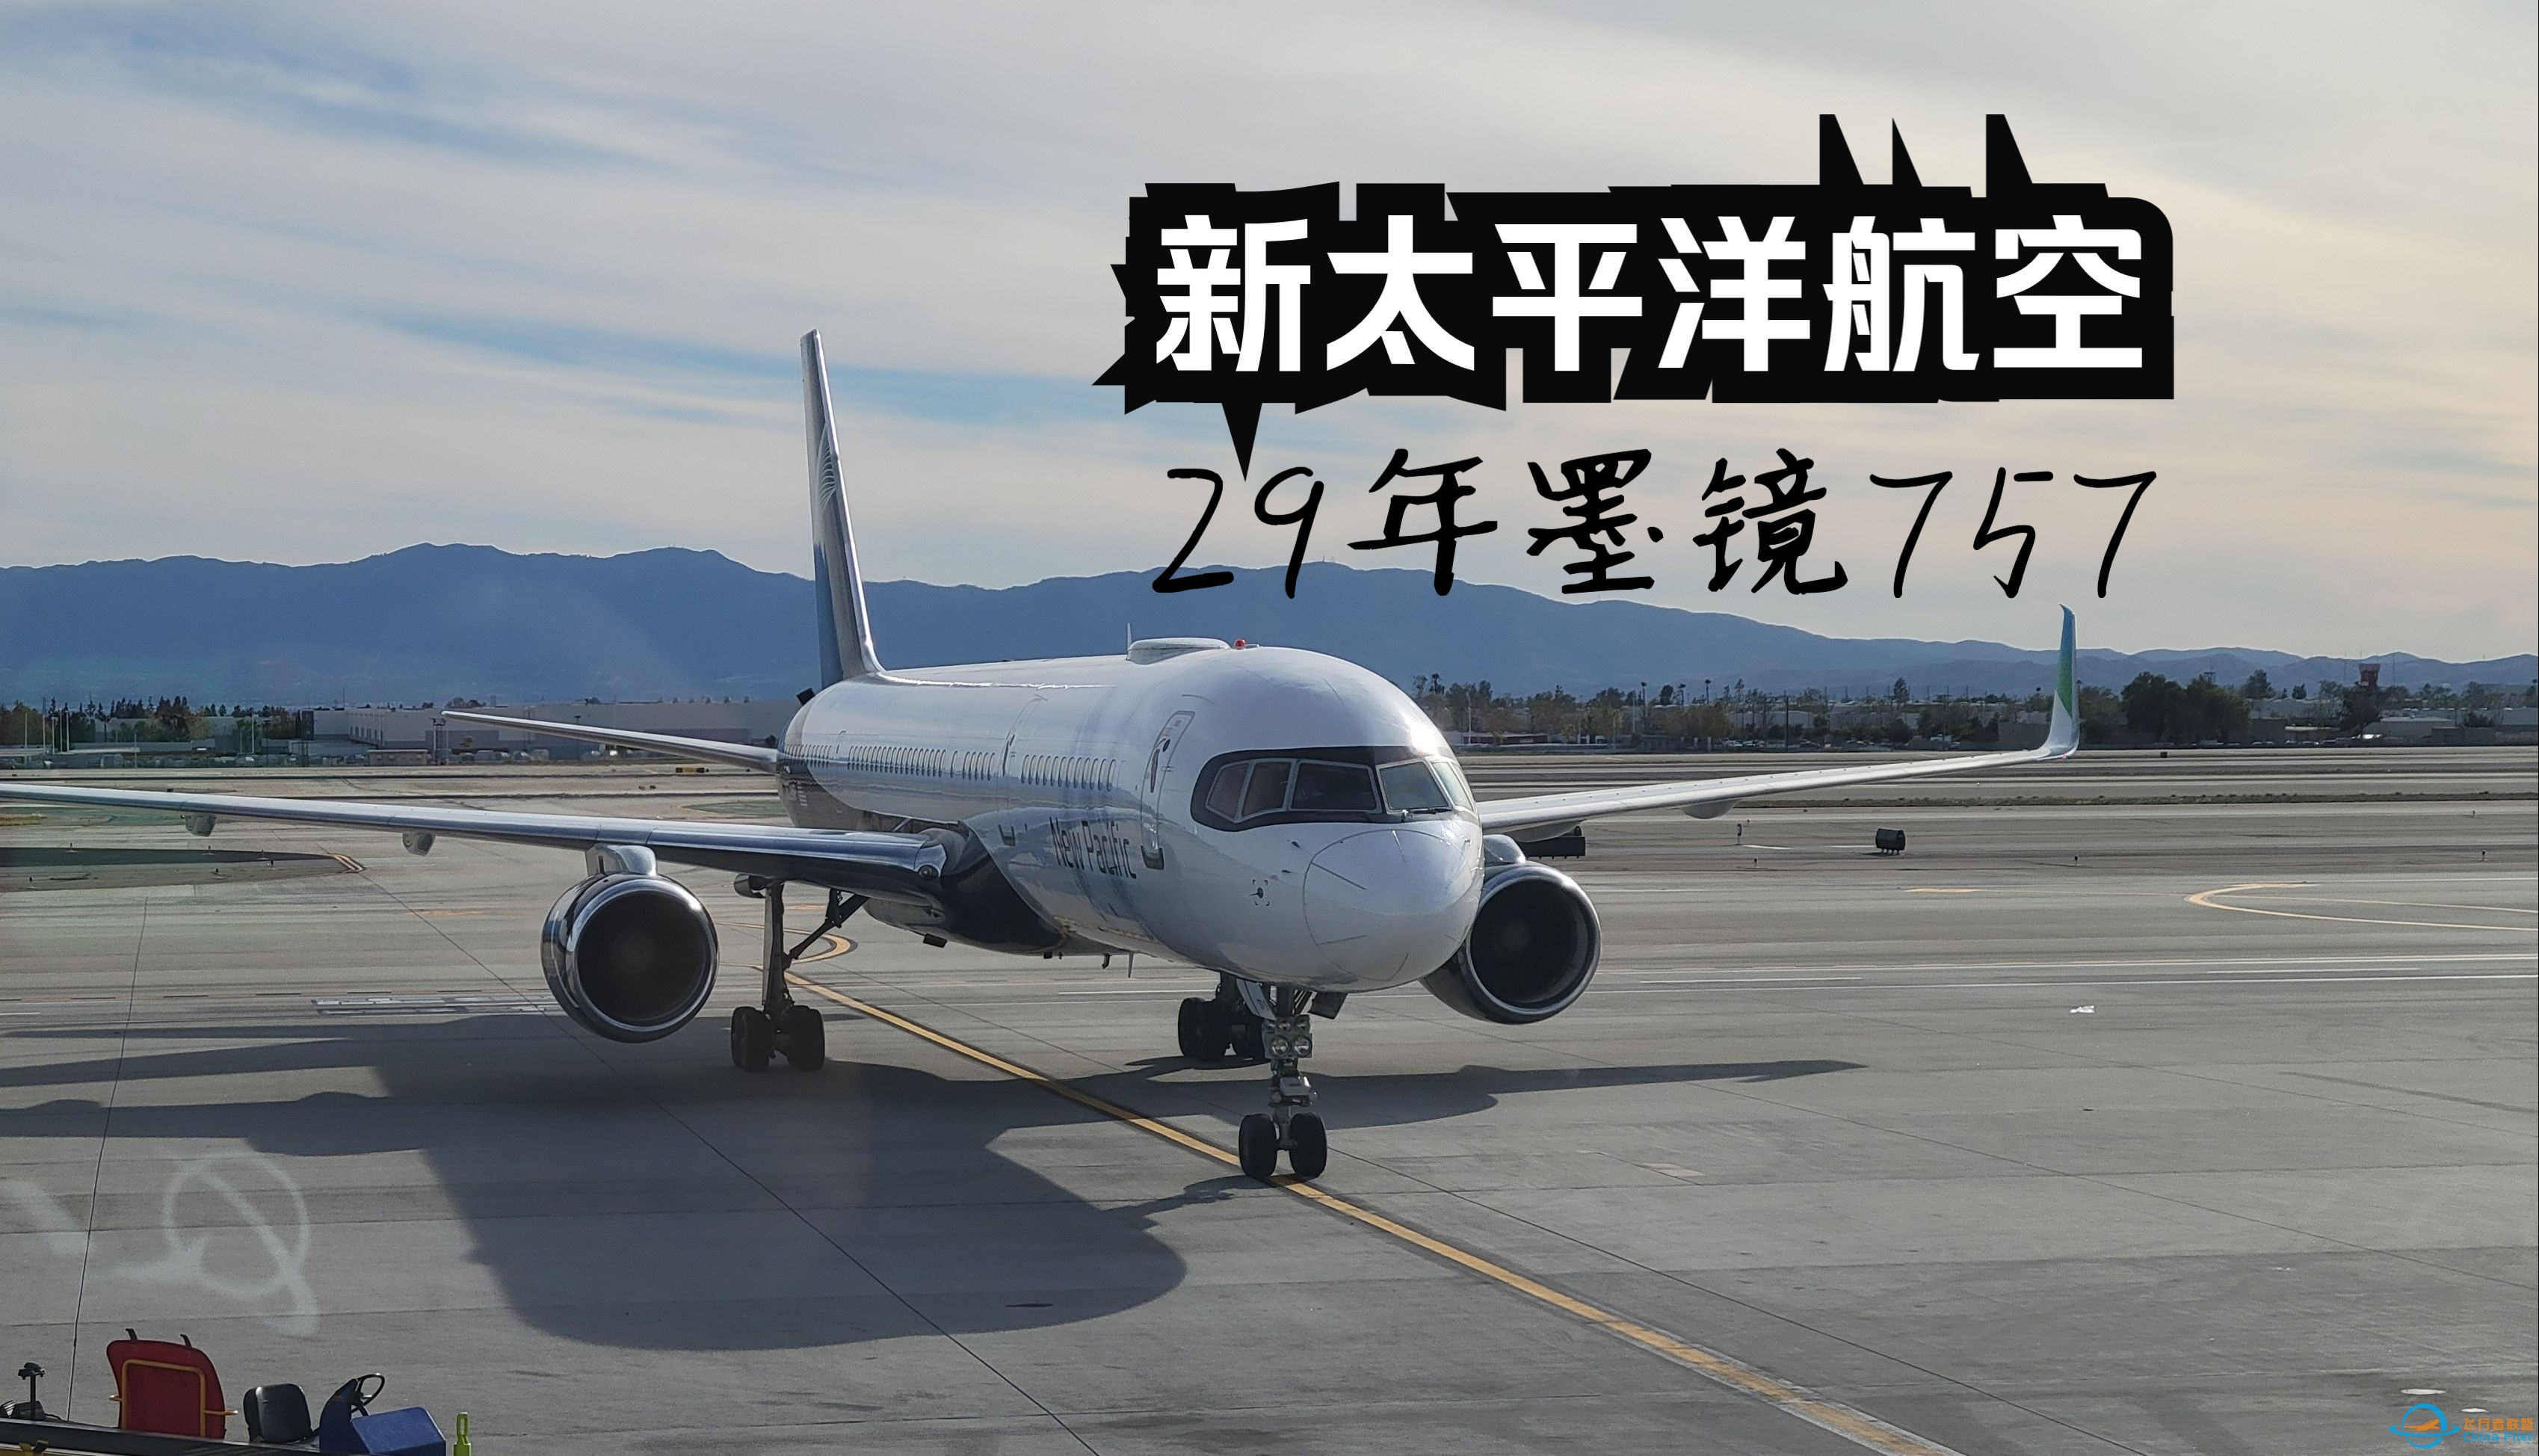 【飞行游记】当全新跨太平洋公司遇上墨镜757？全站首发新太平洋航空波音757超级经济舱体验-5560 